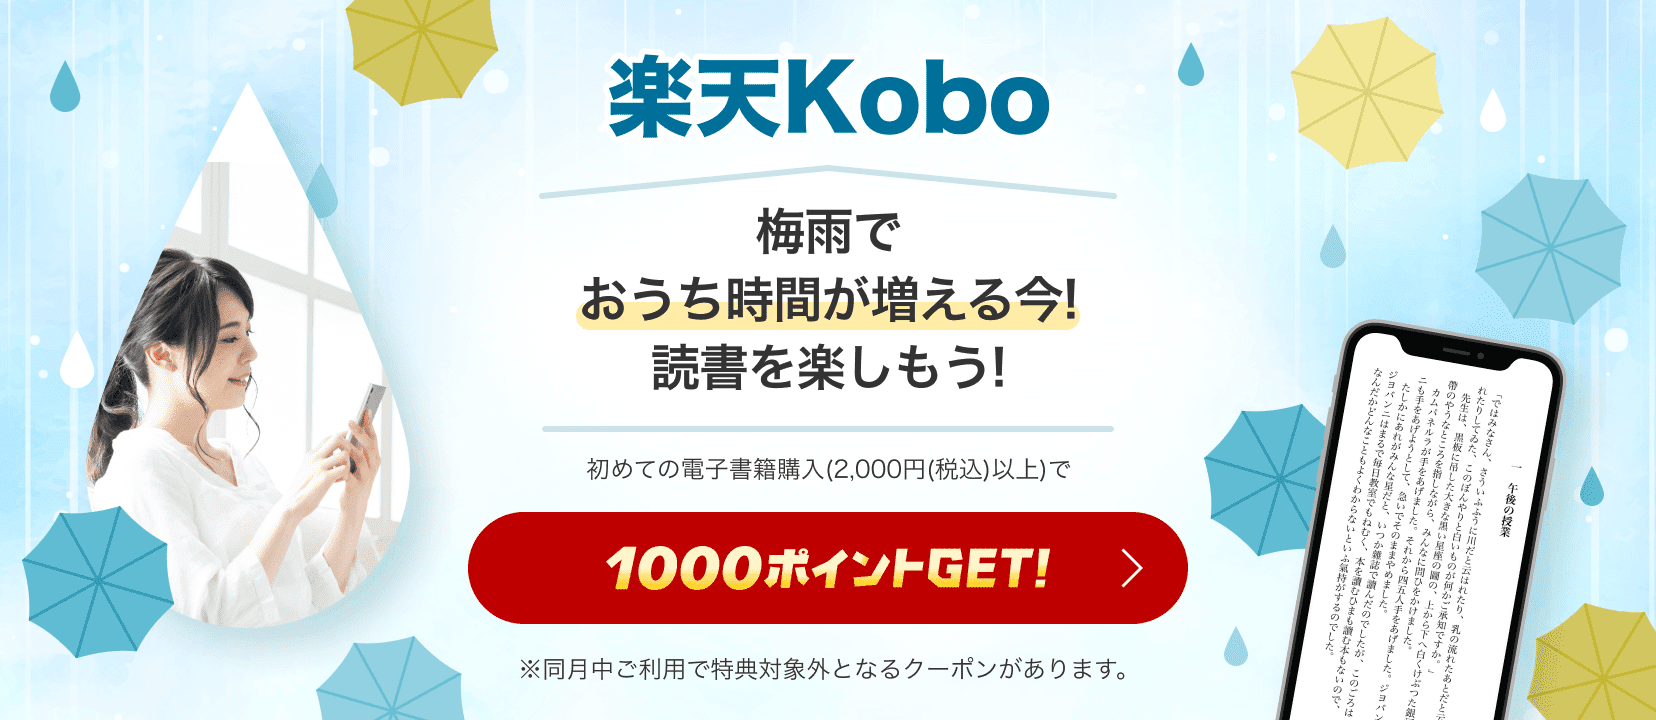 楽天Kobo 梅雨でおうち時間が増える今!読書を楽しもう! 初めての電子書籍購入(2,000円(税込)以上)で1000ポイントGET！ ※同月中ご利用で特典対象外となるクーポンがあります。